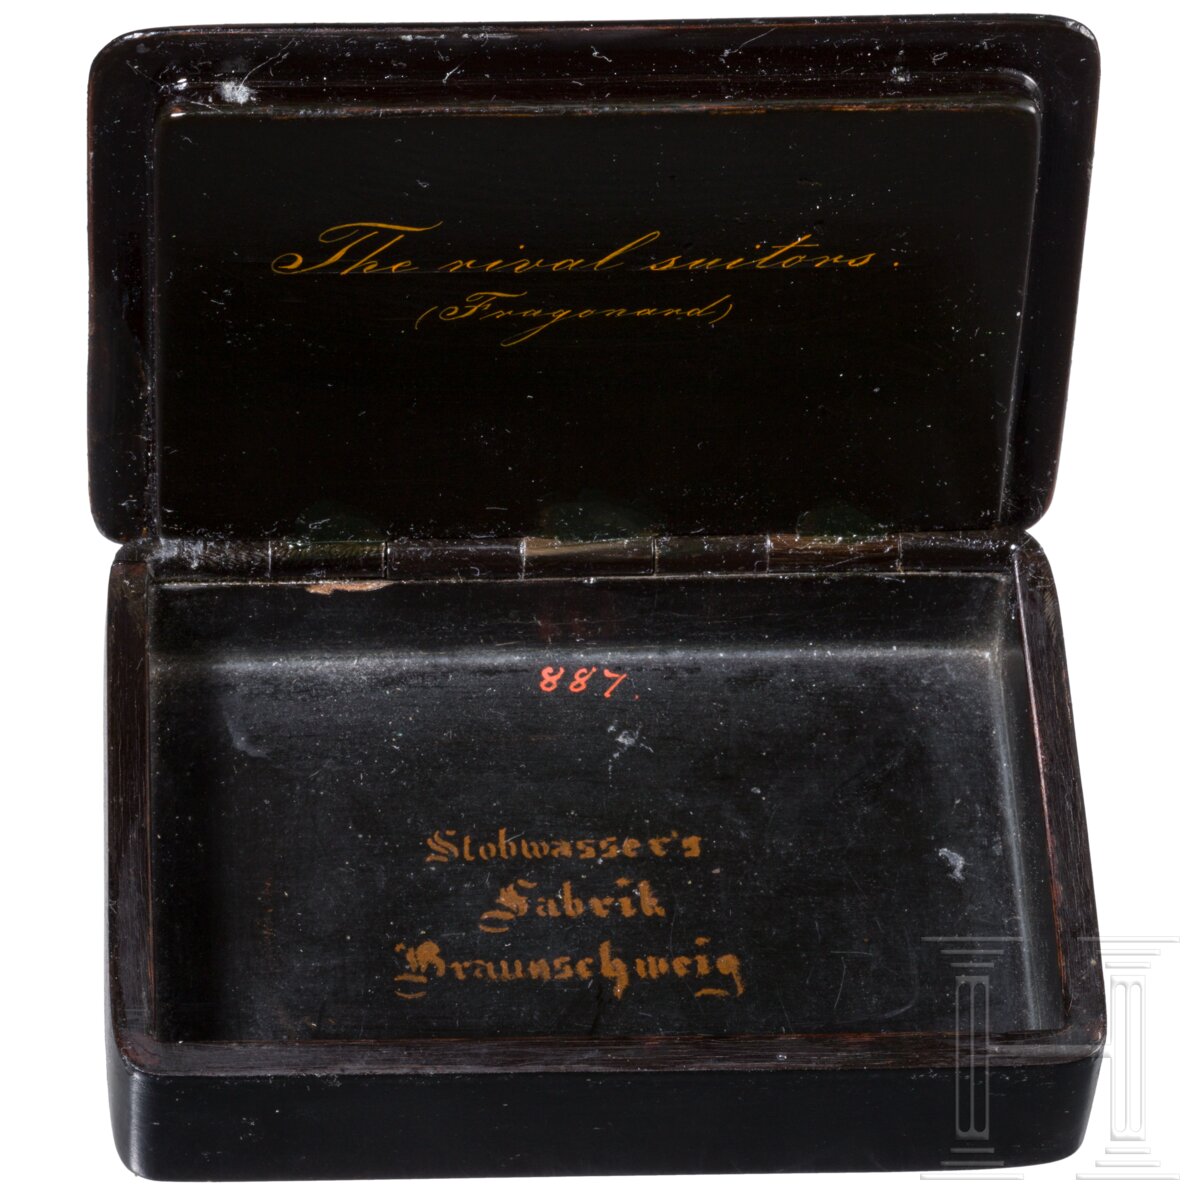 Schnupftabakdose "Die Spielkarte", Braunschweig, Manufaktur Stobwasser, um 1820 - Image 2 of 5